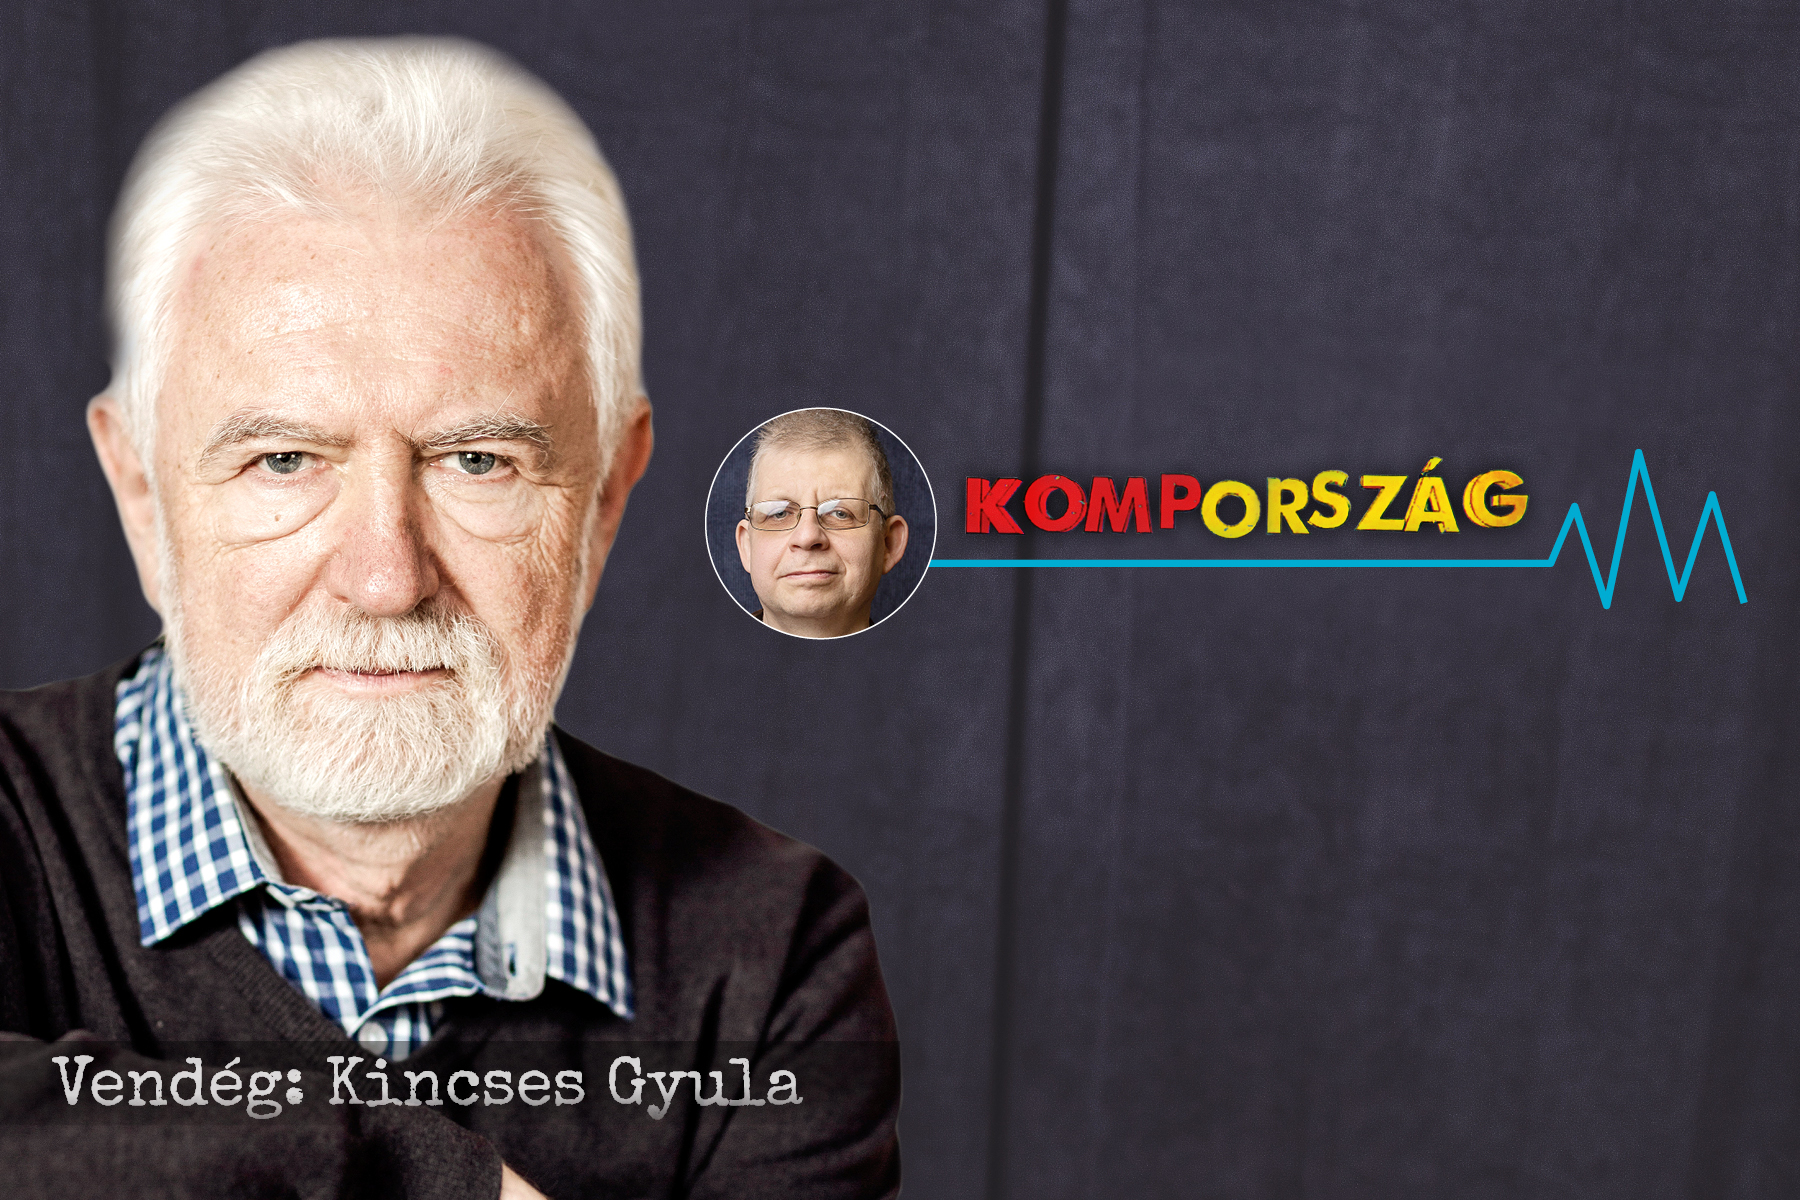 Kincses Gyula a Kompországban: Azt gondolta Pintér, az orvosokat is megfegyelmezheti